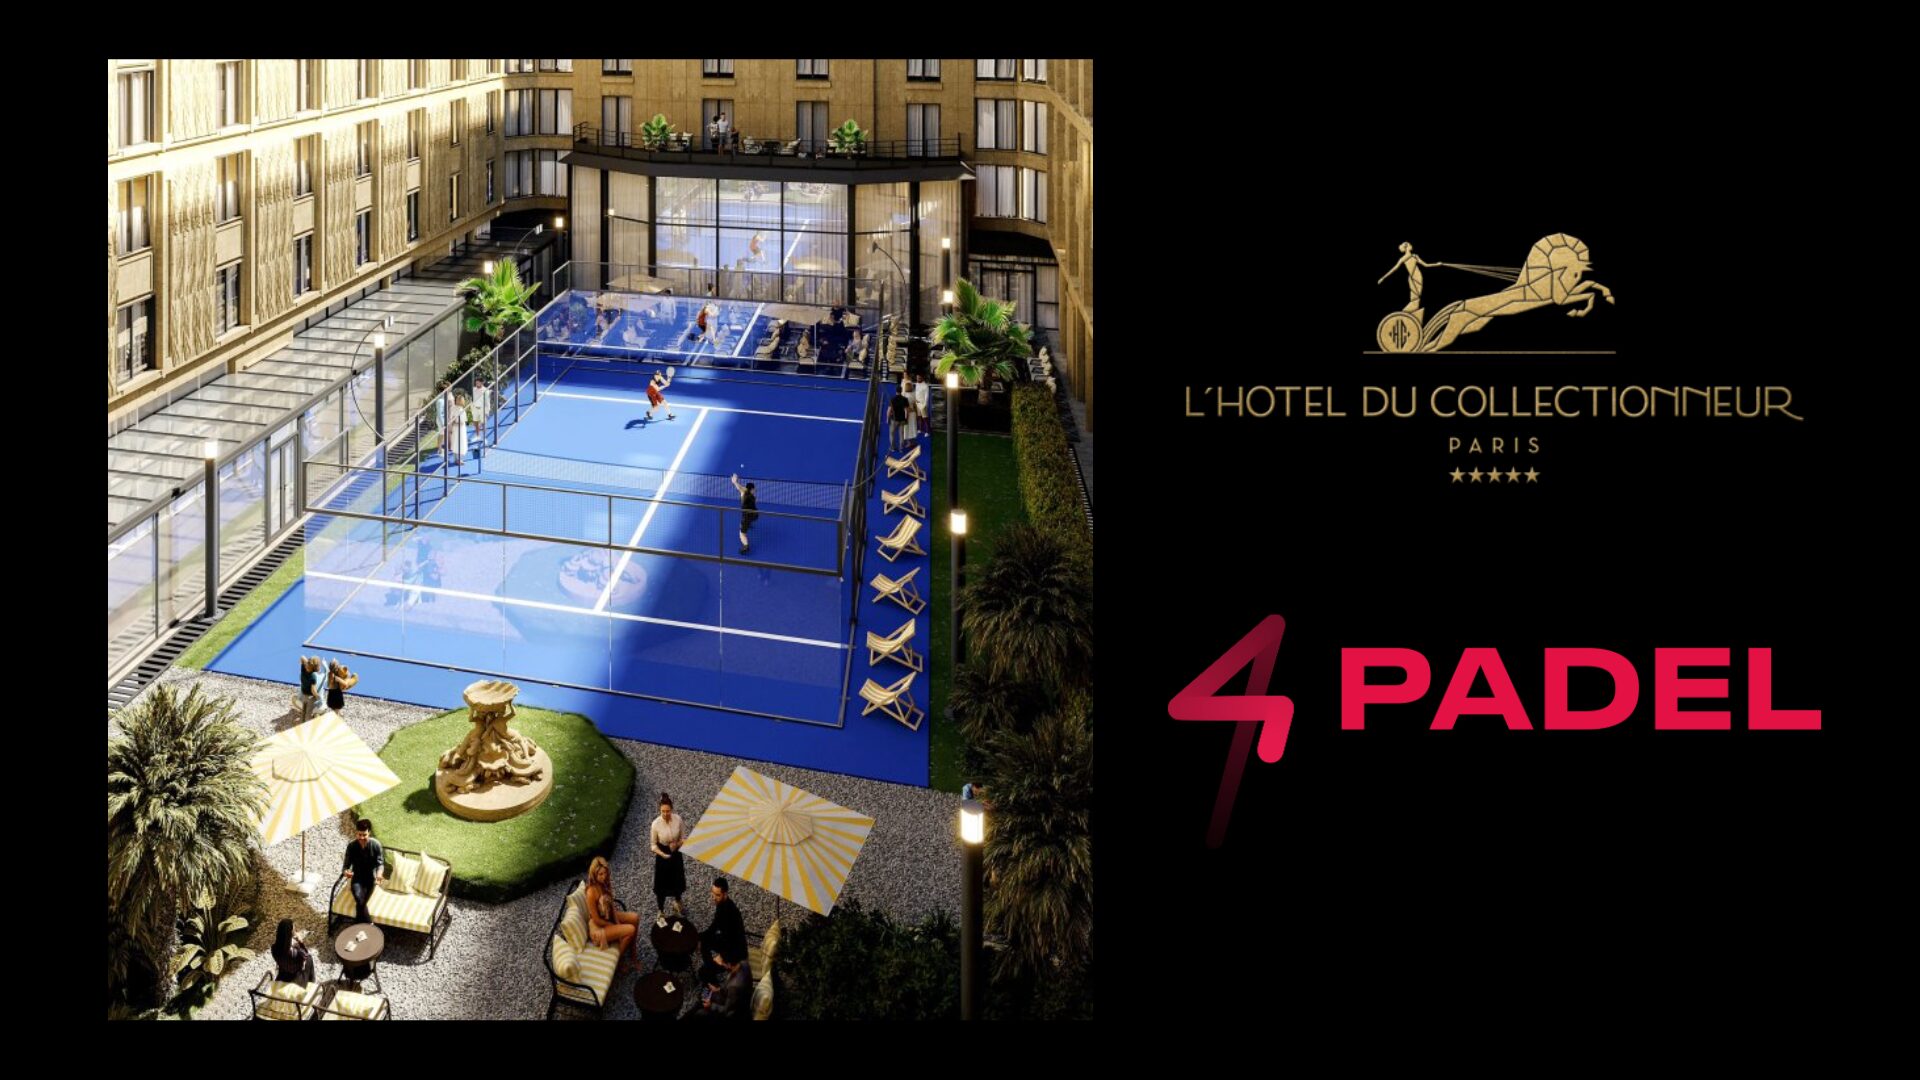 Une piste de padel bientôt installée dans un hôtel de luxe parisien